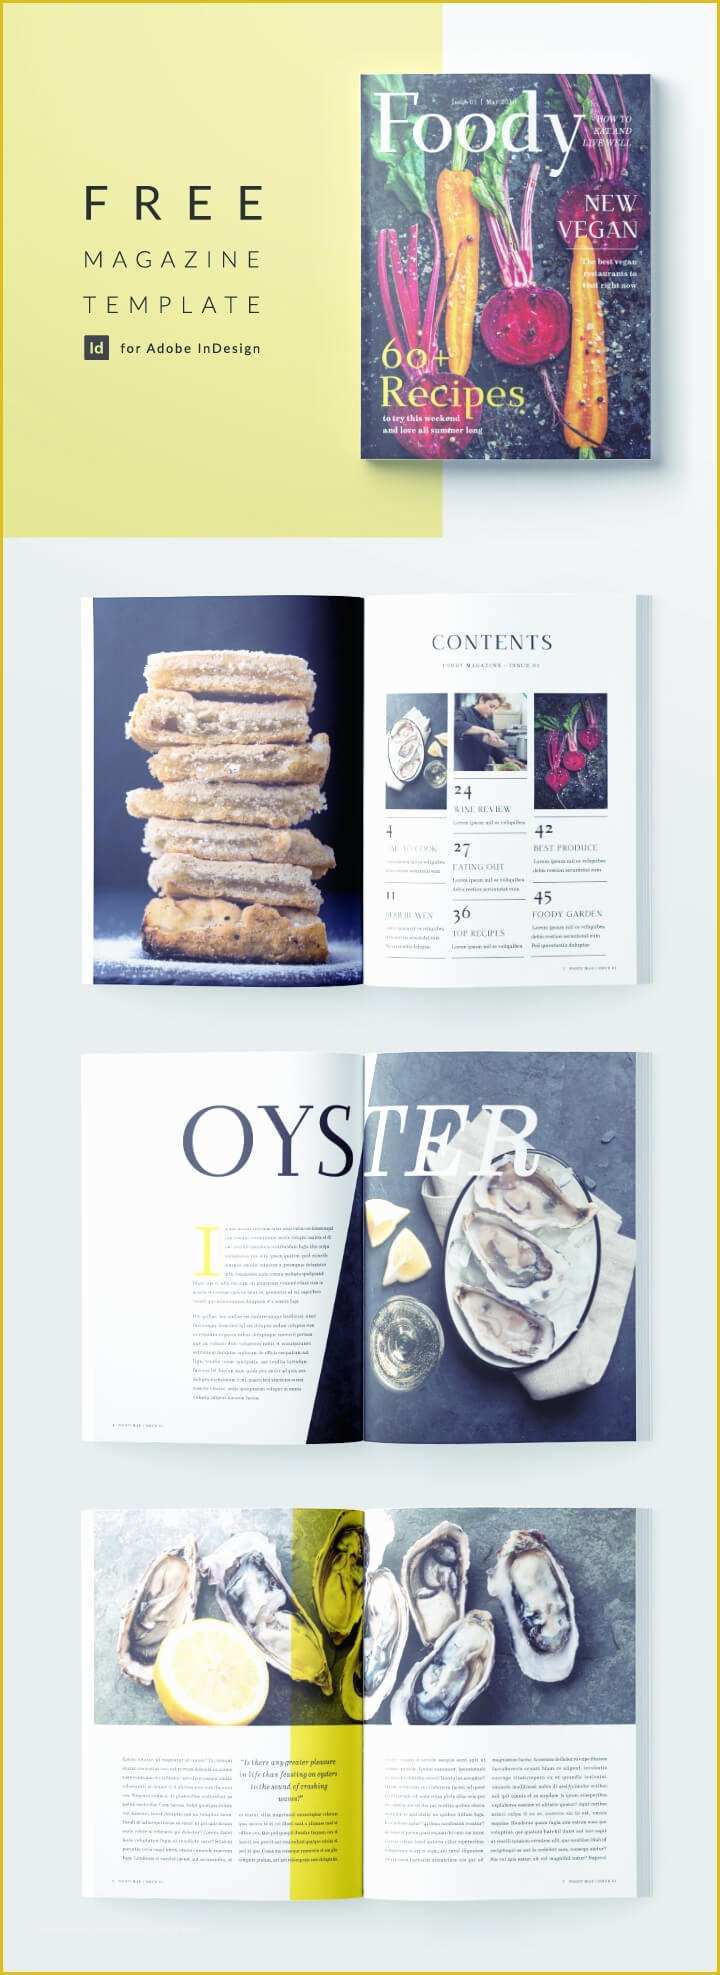 Free Magazine Template Indesign Of Stylish Food Magazine Template for Indesign